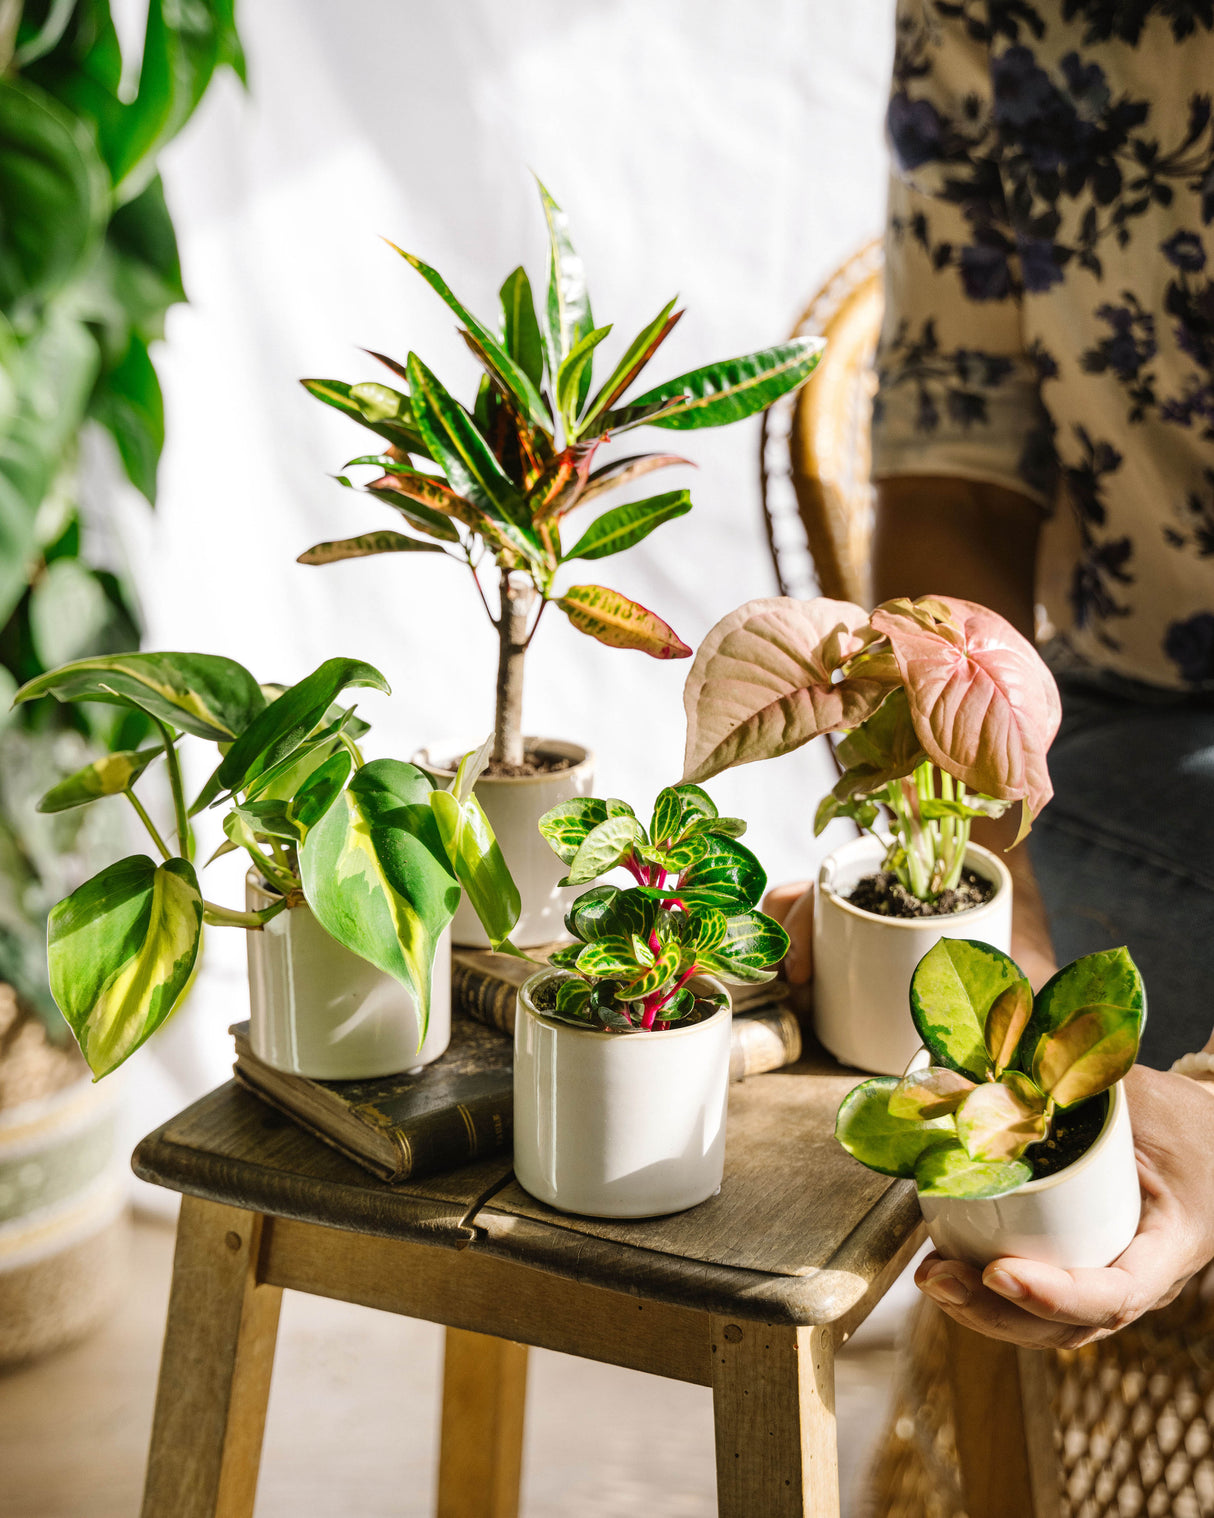 Offrir une plante d'intérieur – La Green Touch